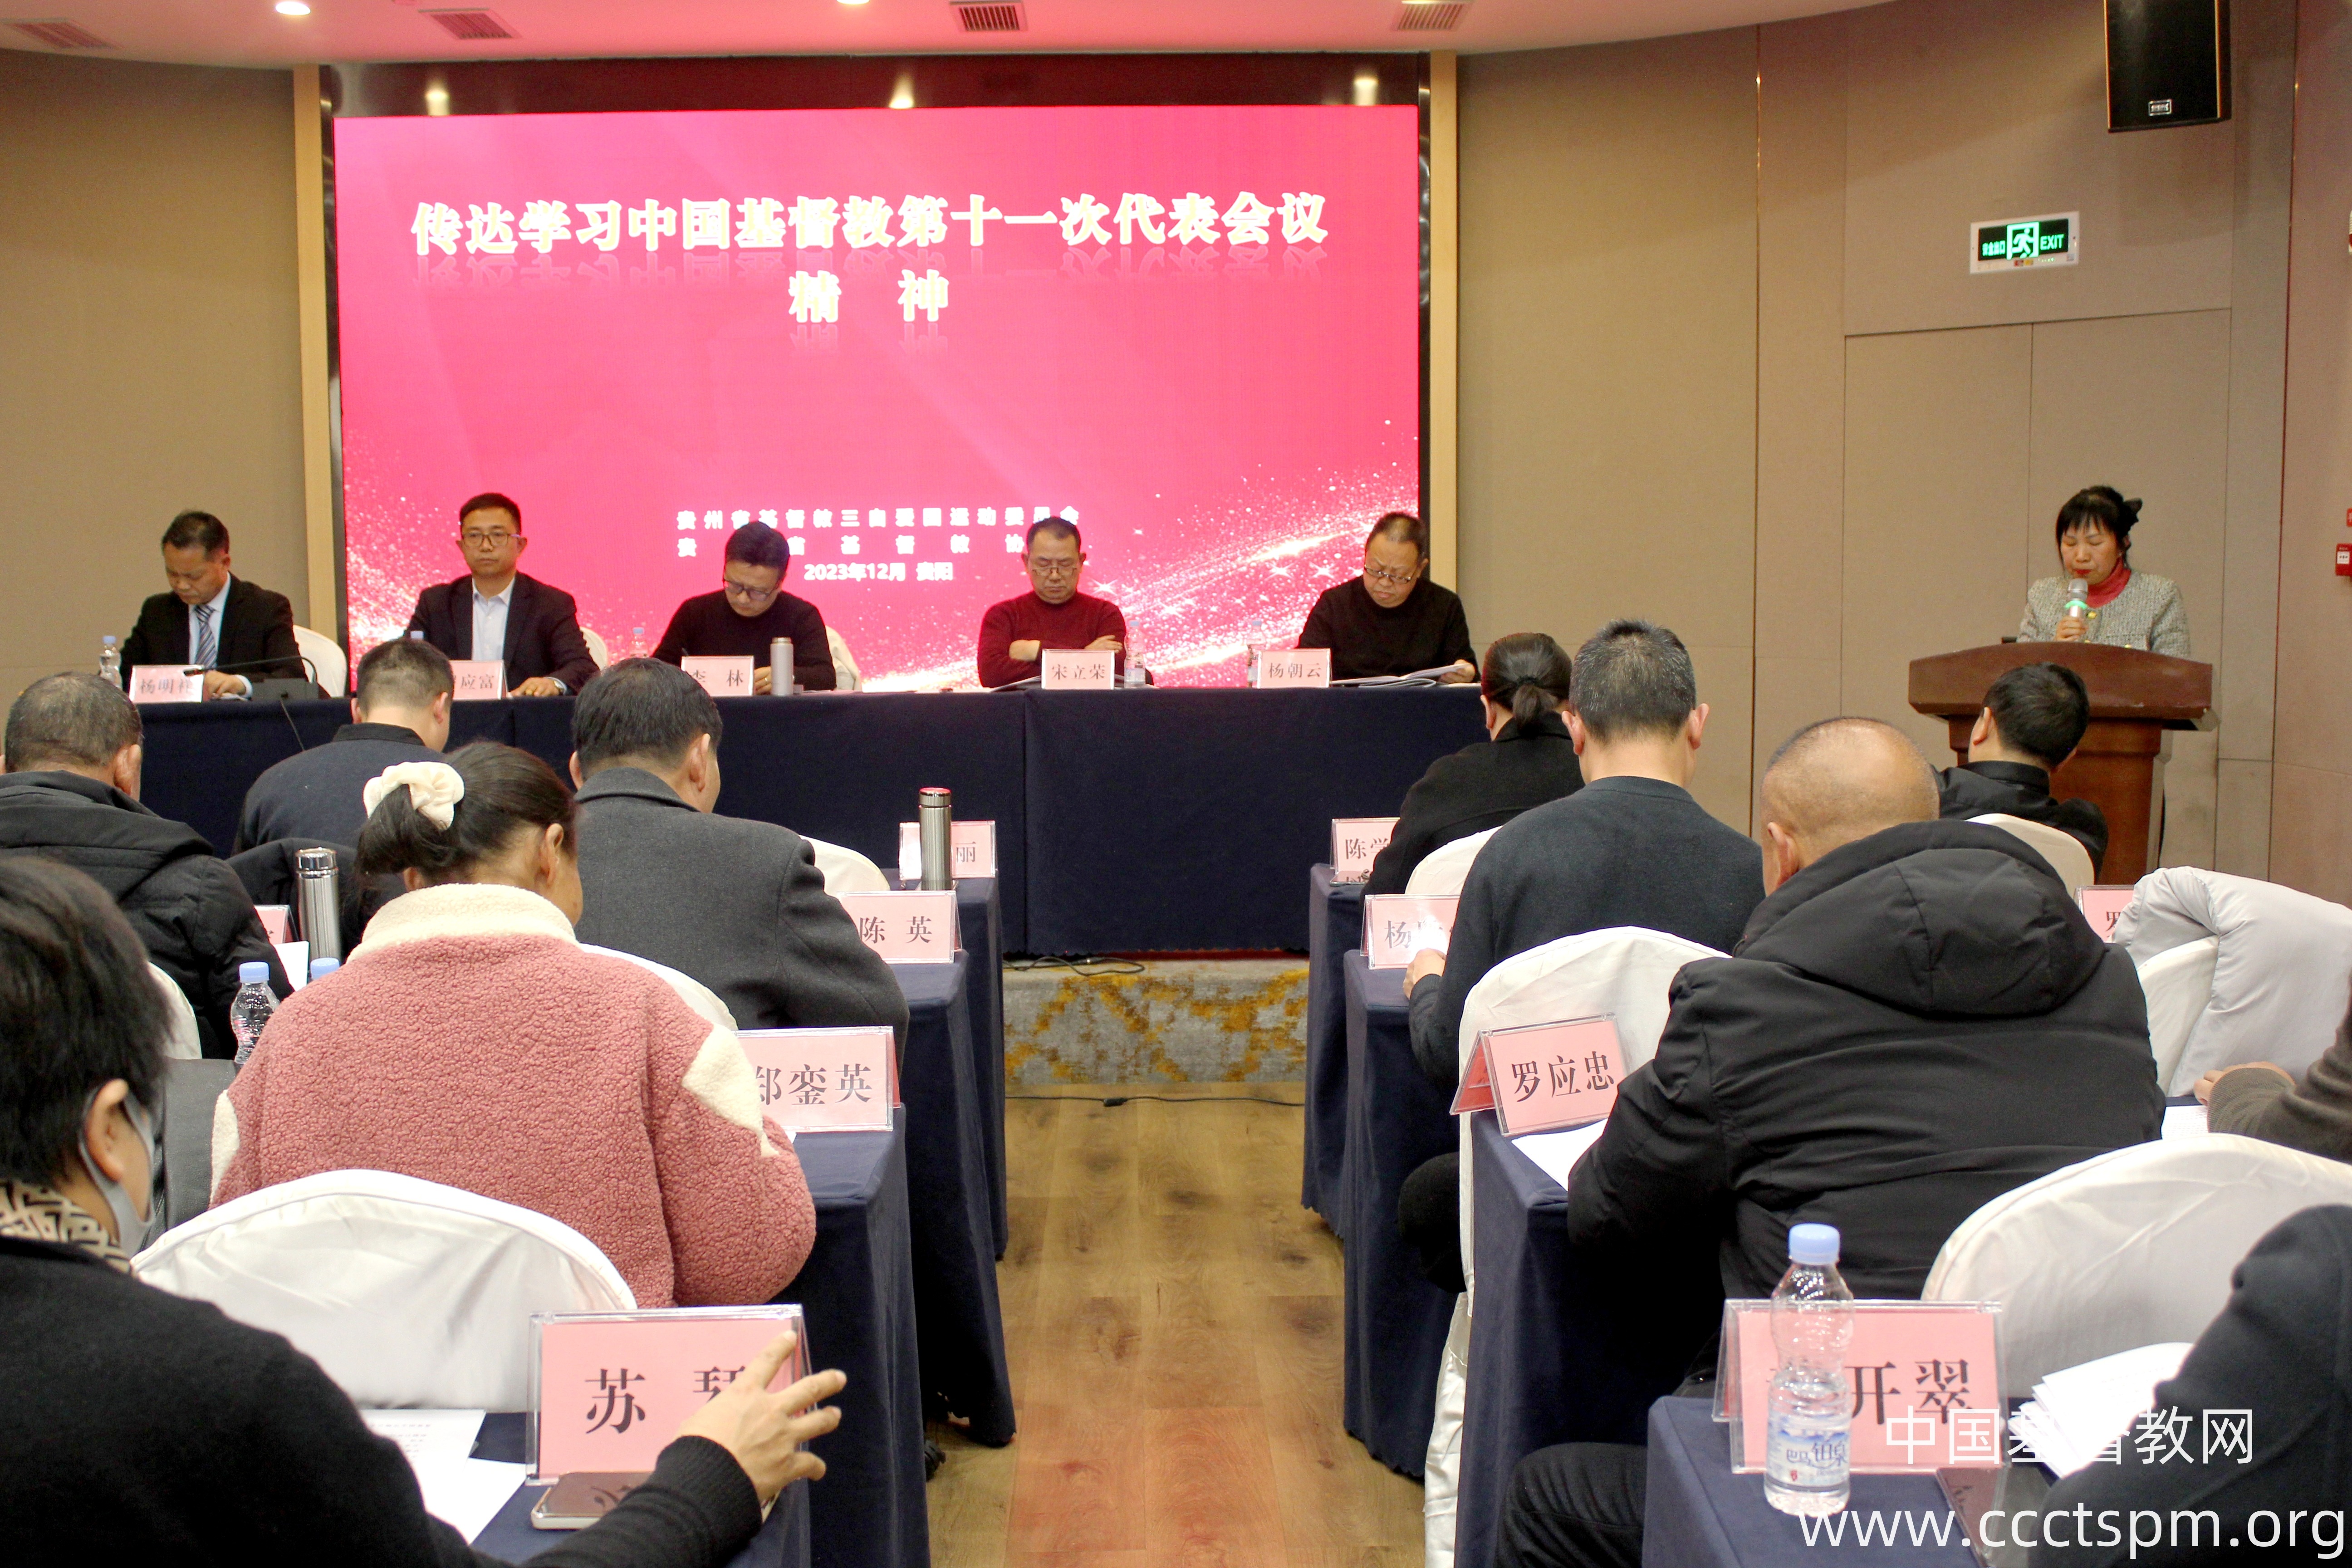 中国基督教第十一次代表会议精神在贵州基督教界引起强烈反响